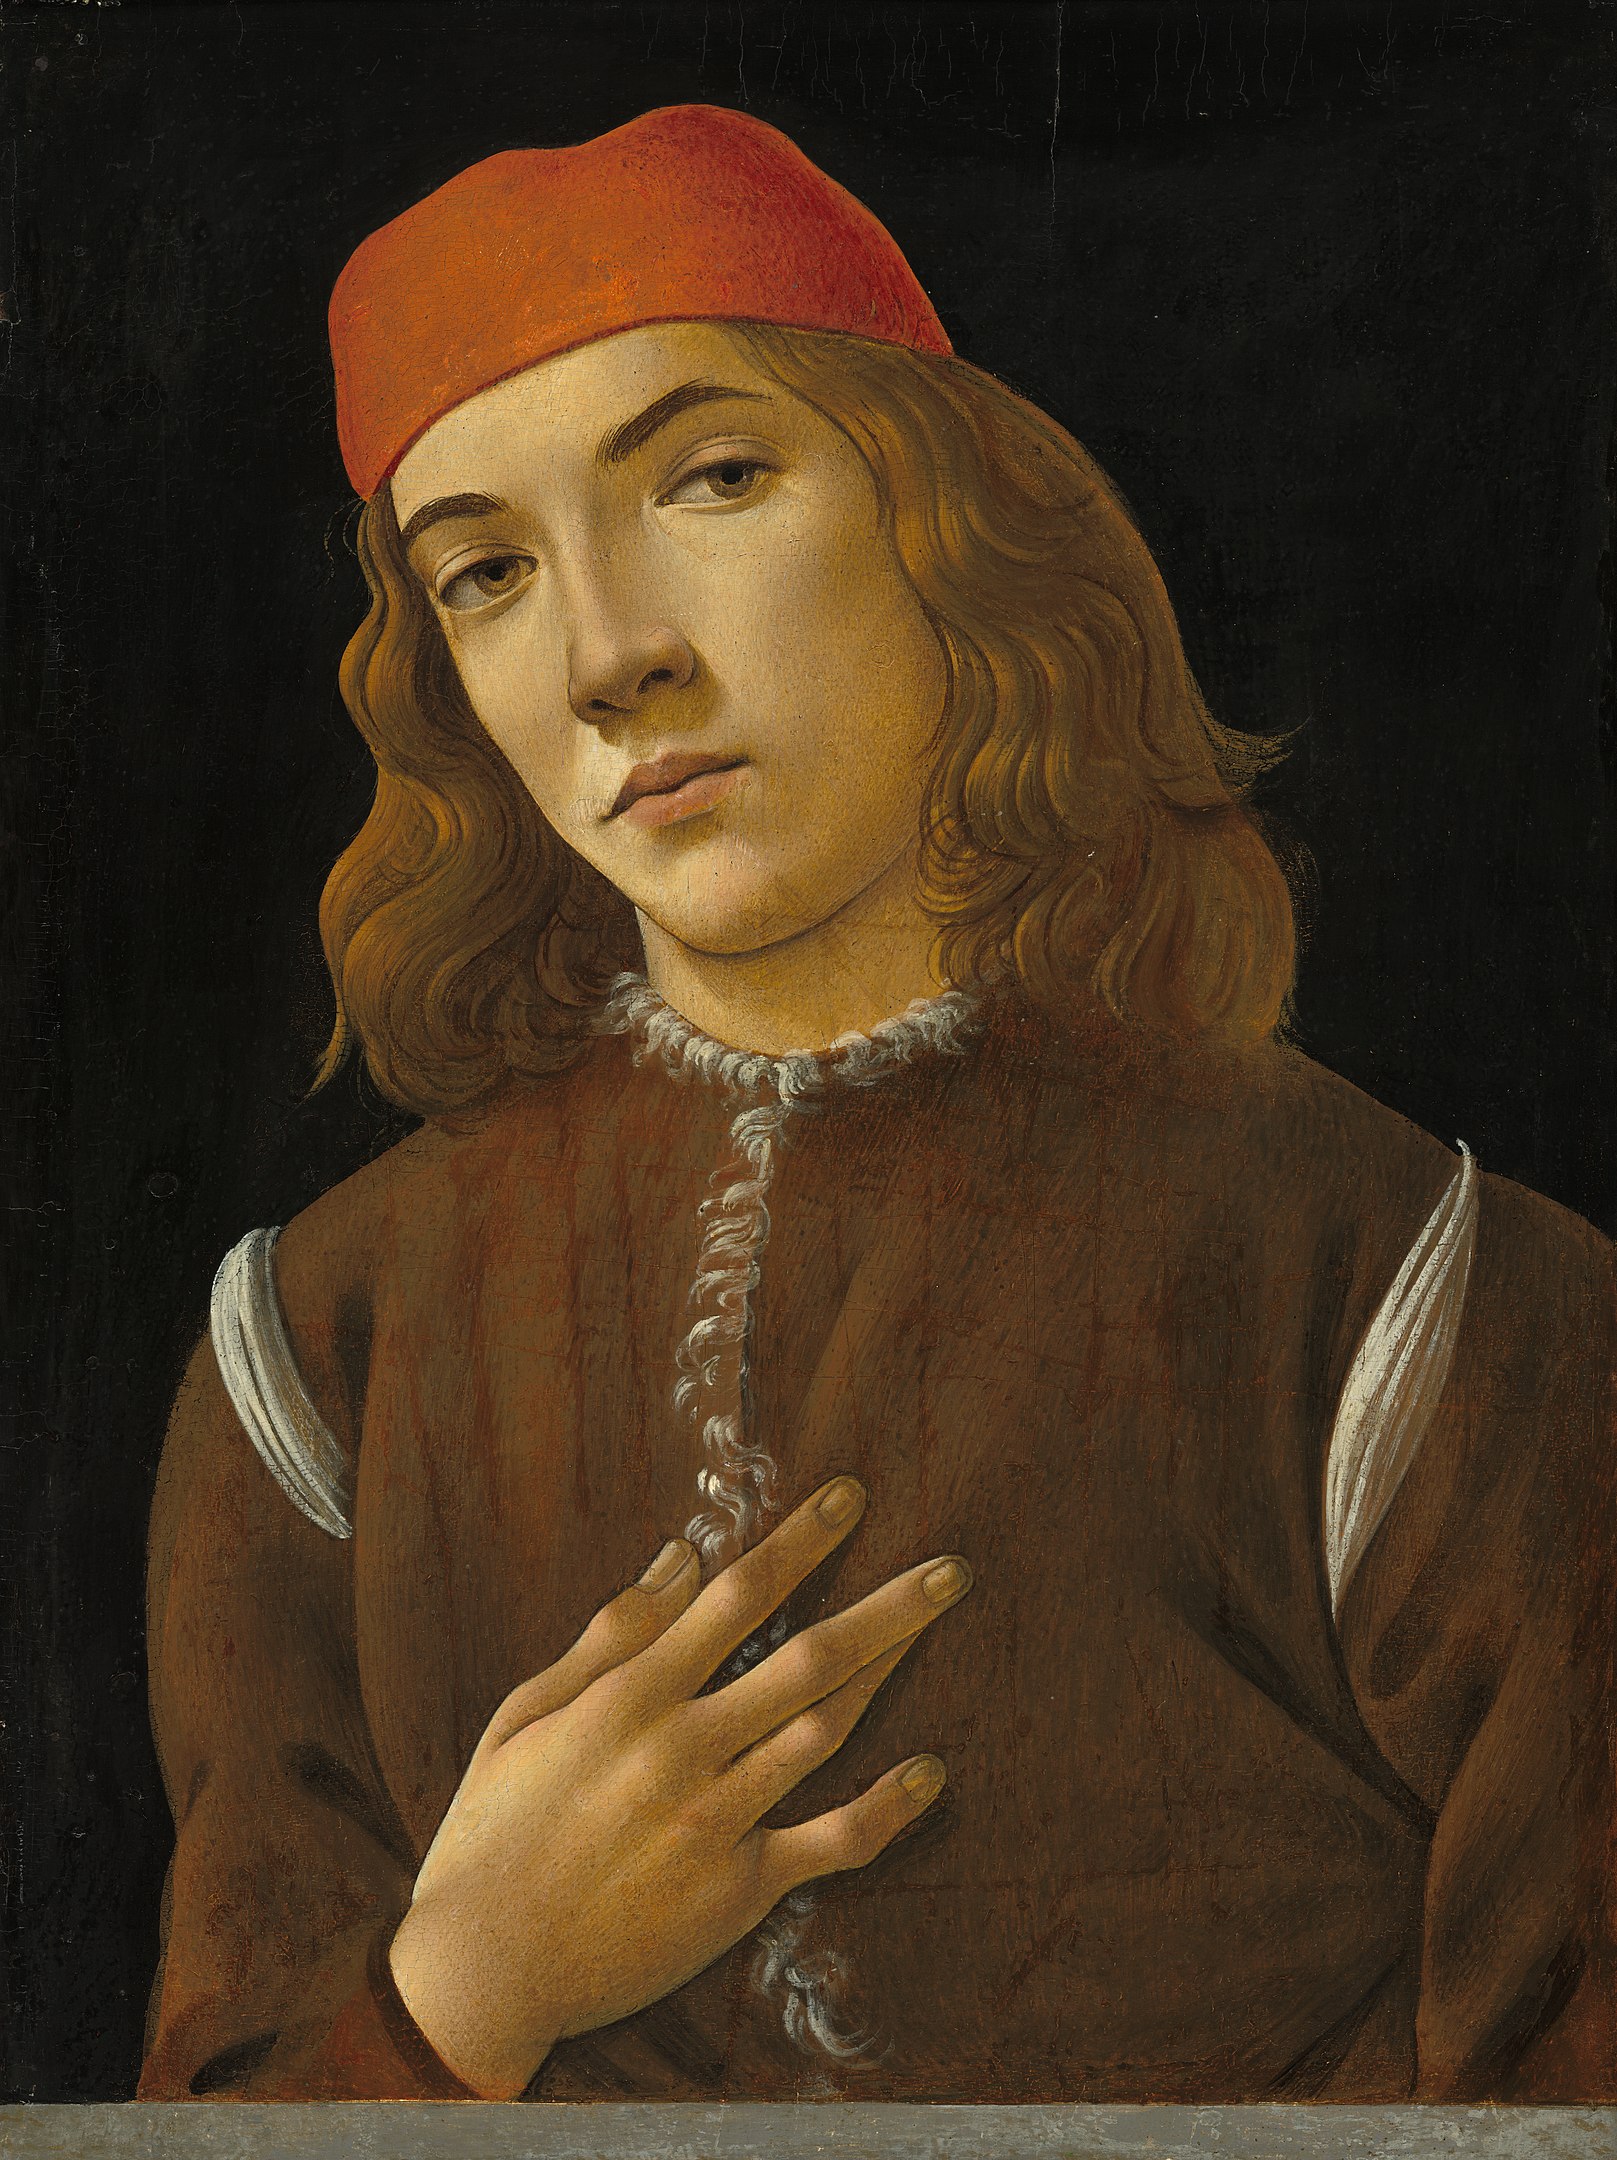 Porträt eines jungen Mannes by Sandro Botticelli - circa 1483 - 43,5 x 46,2 cm National Gallery of Art